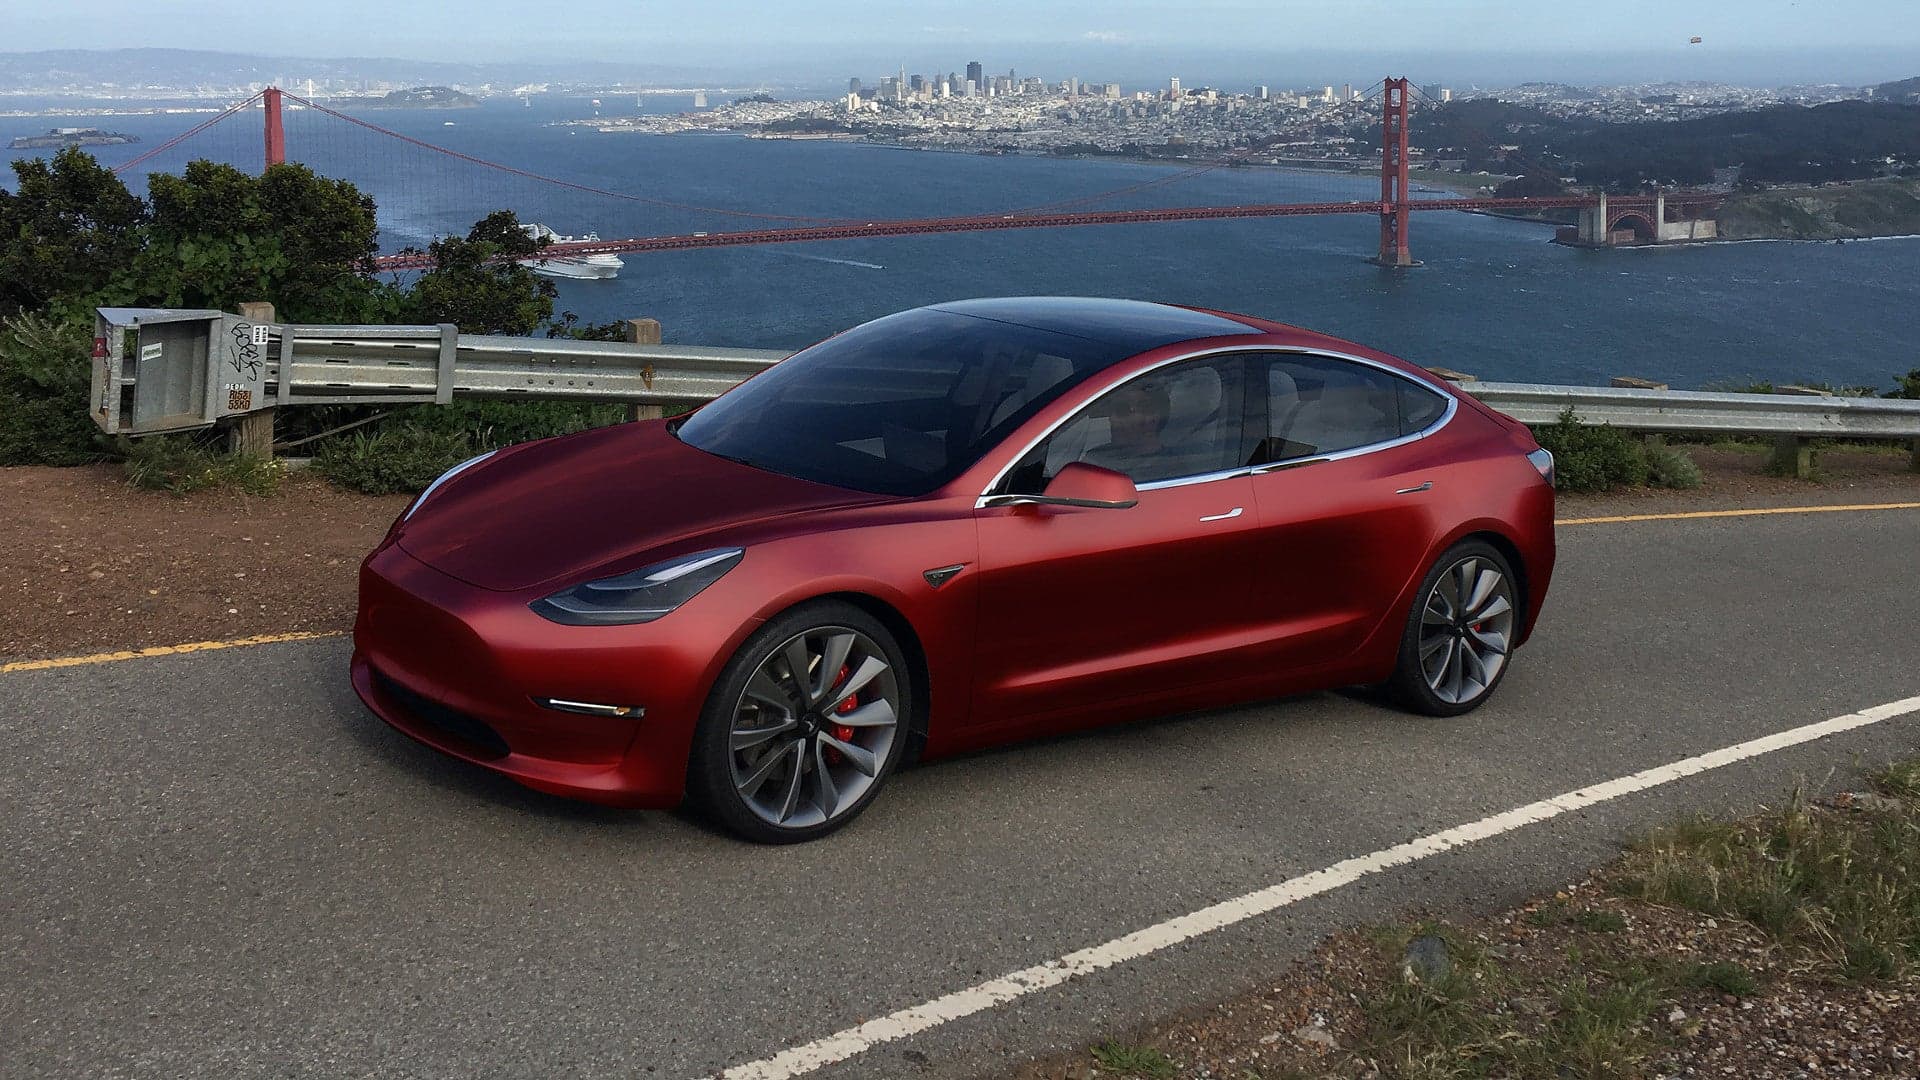 Tesla Model 3 Be Revealed in ‘Final’ Form in July, Elon Musk Says